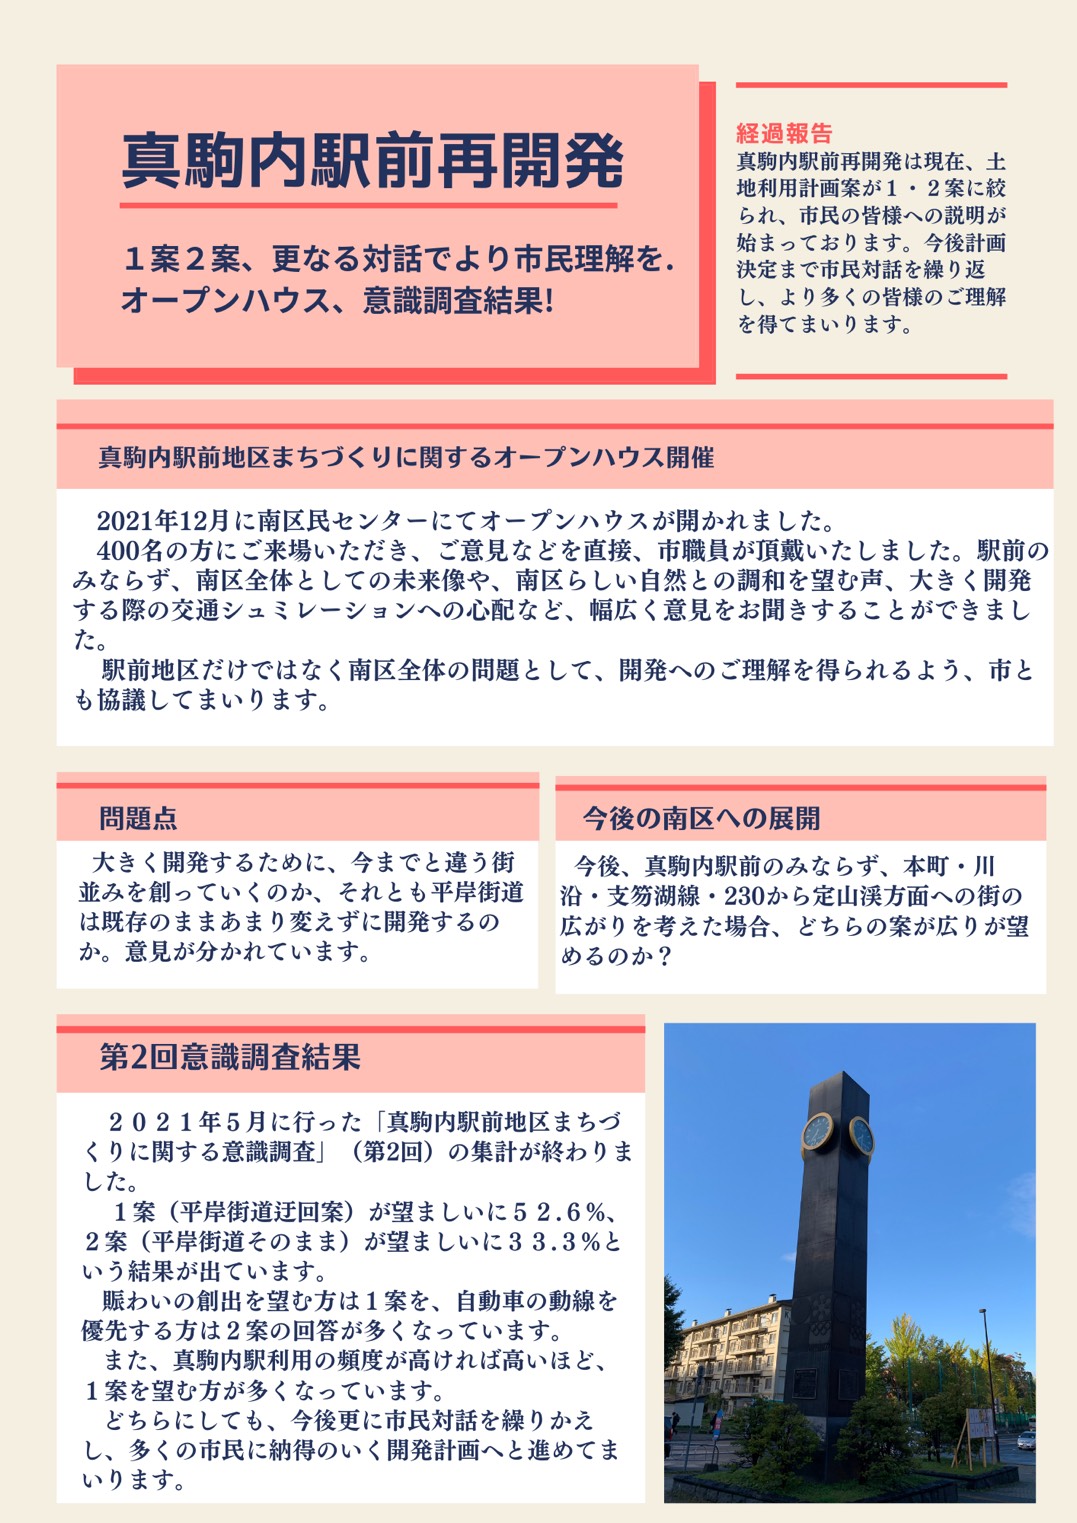 あおいひろみの市政報告No.27